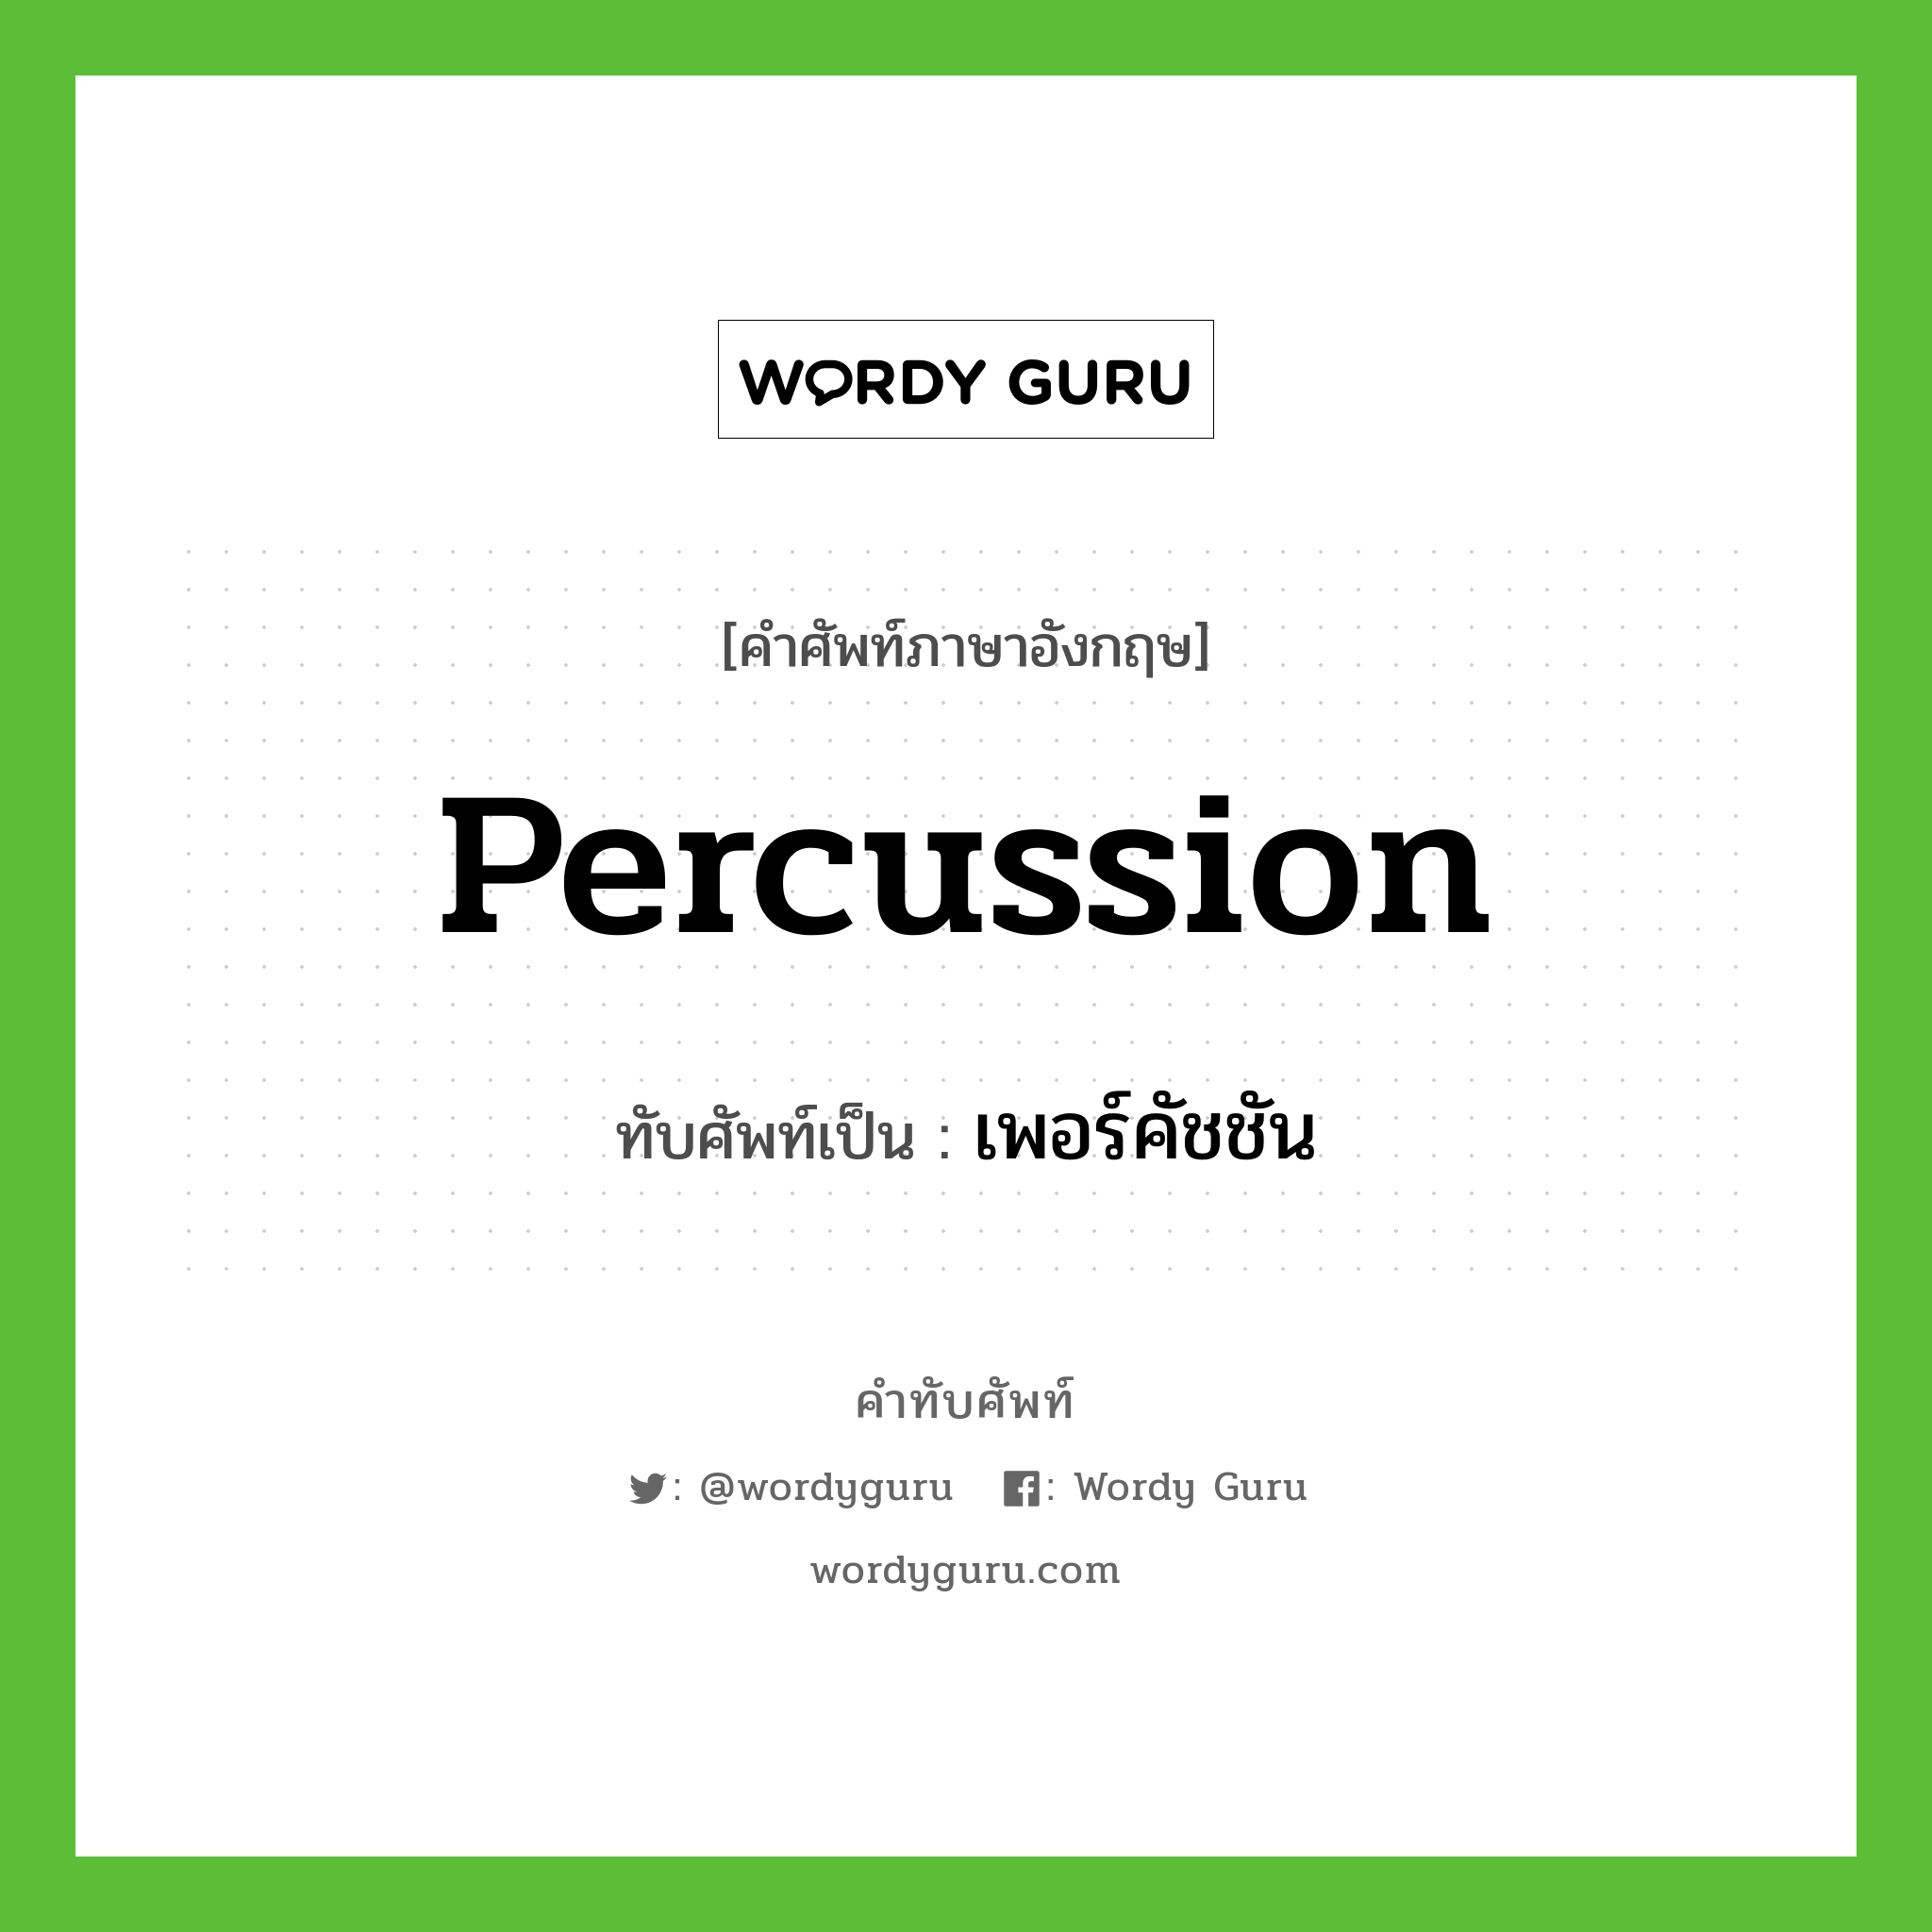 percussion เขียนเป็นคำไทยว่าอะไร?, คำศัพท์ภาษาอังกฤษ percussion ทับศัพท์เป็น เพอร์คัชชัน